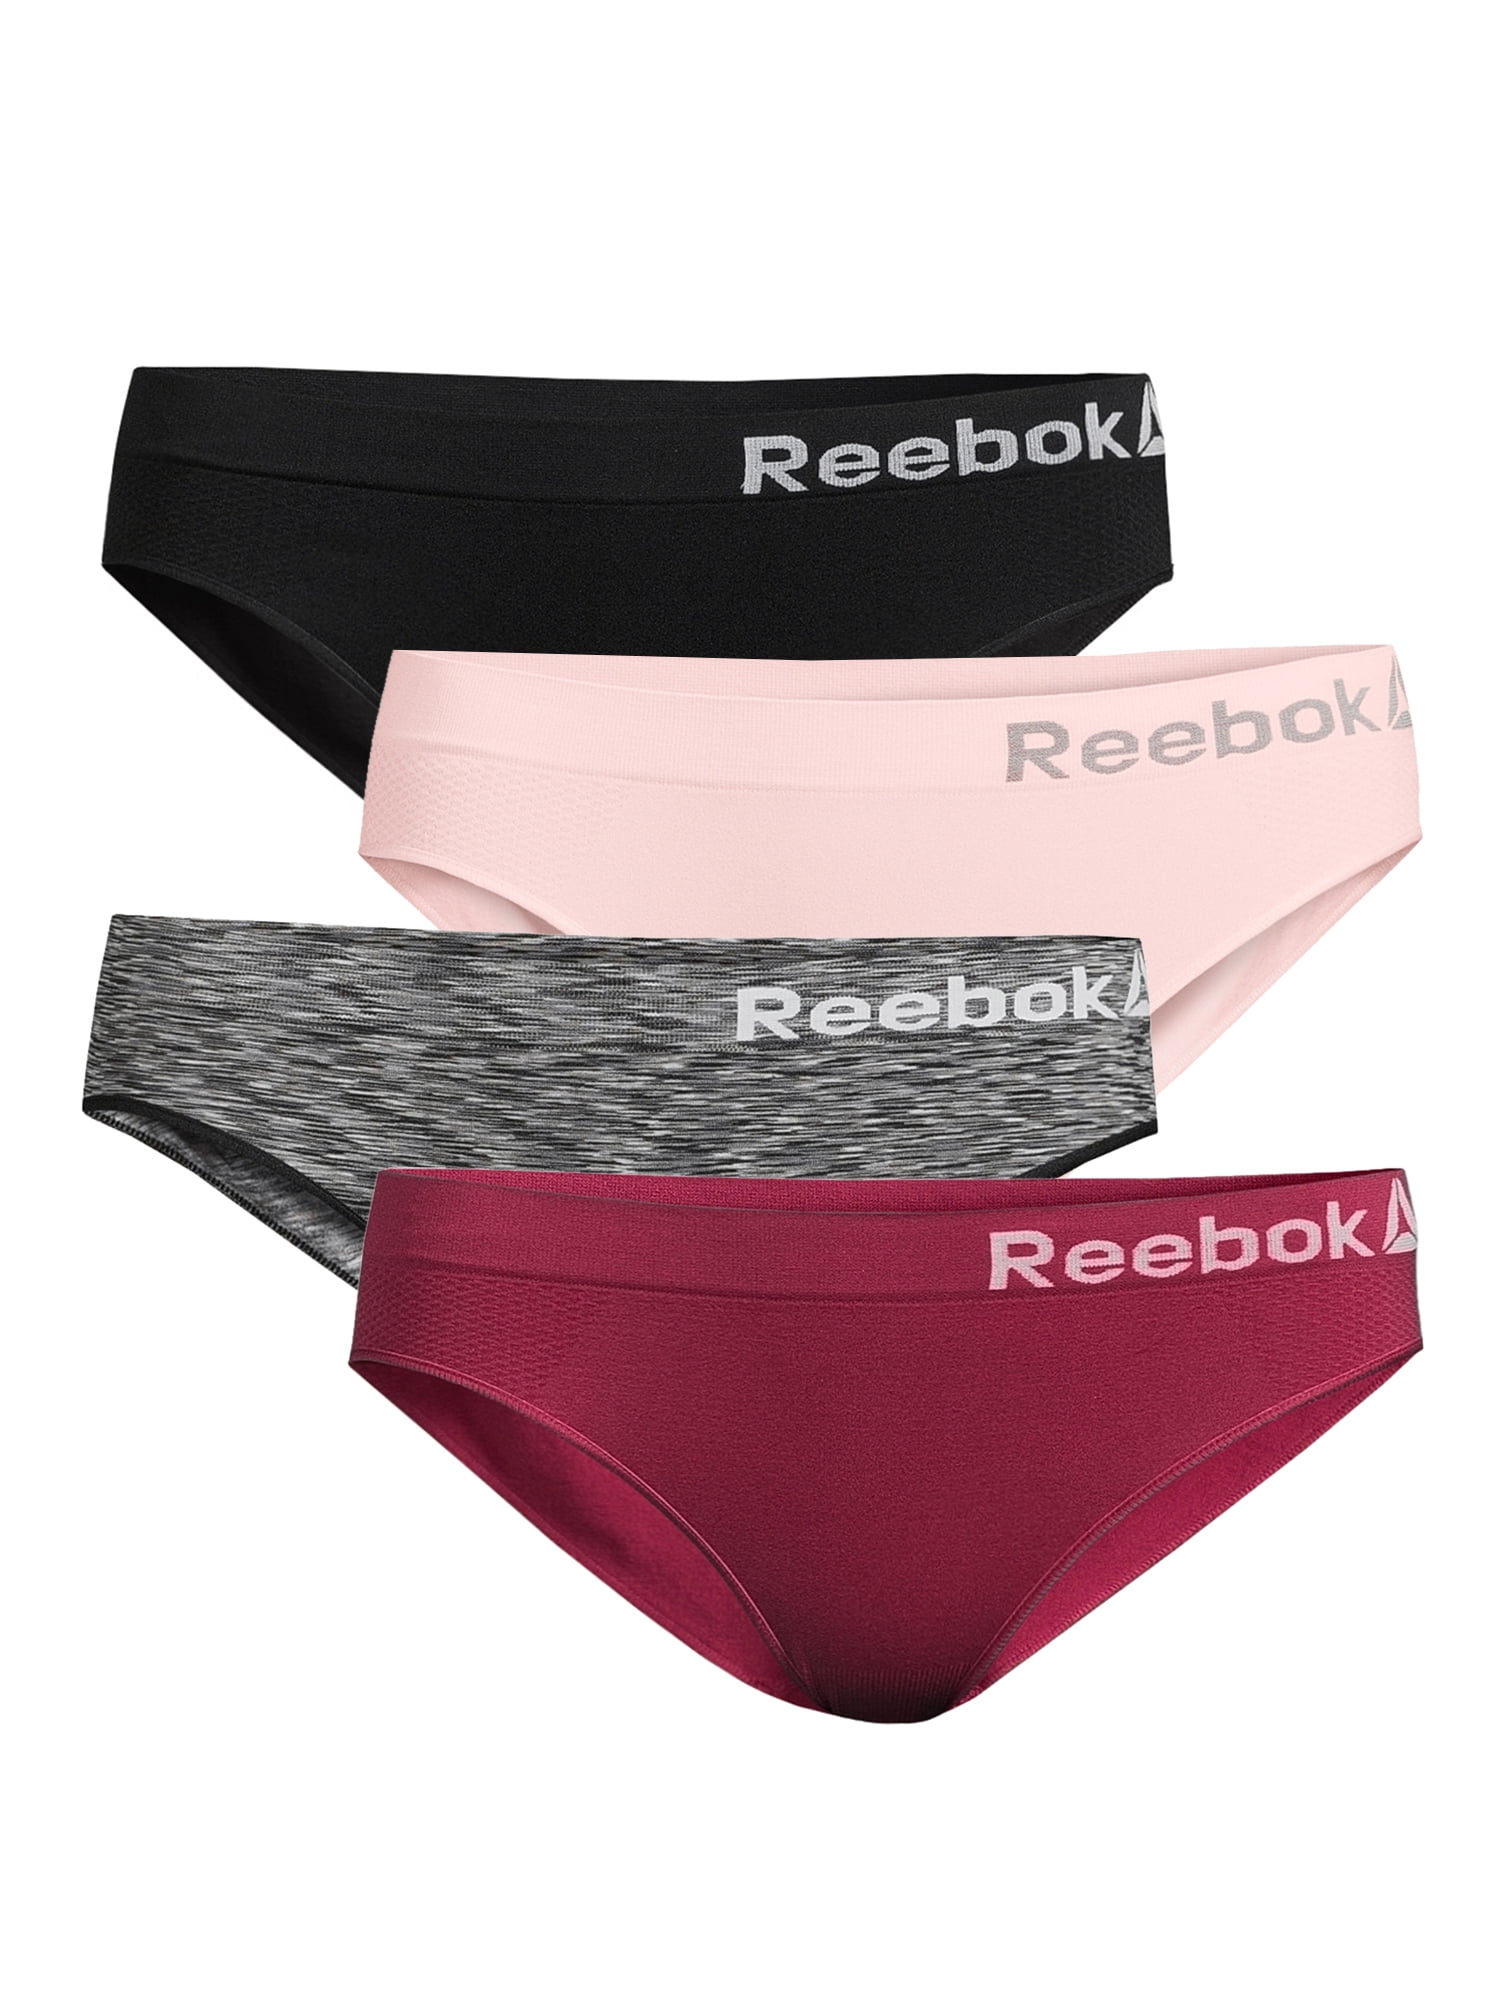 Reebok Womens Seamless Bikini Panties, 4-Pack Palestine